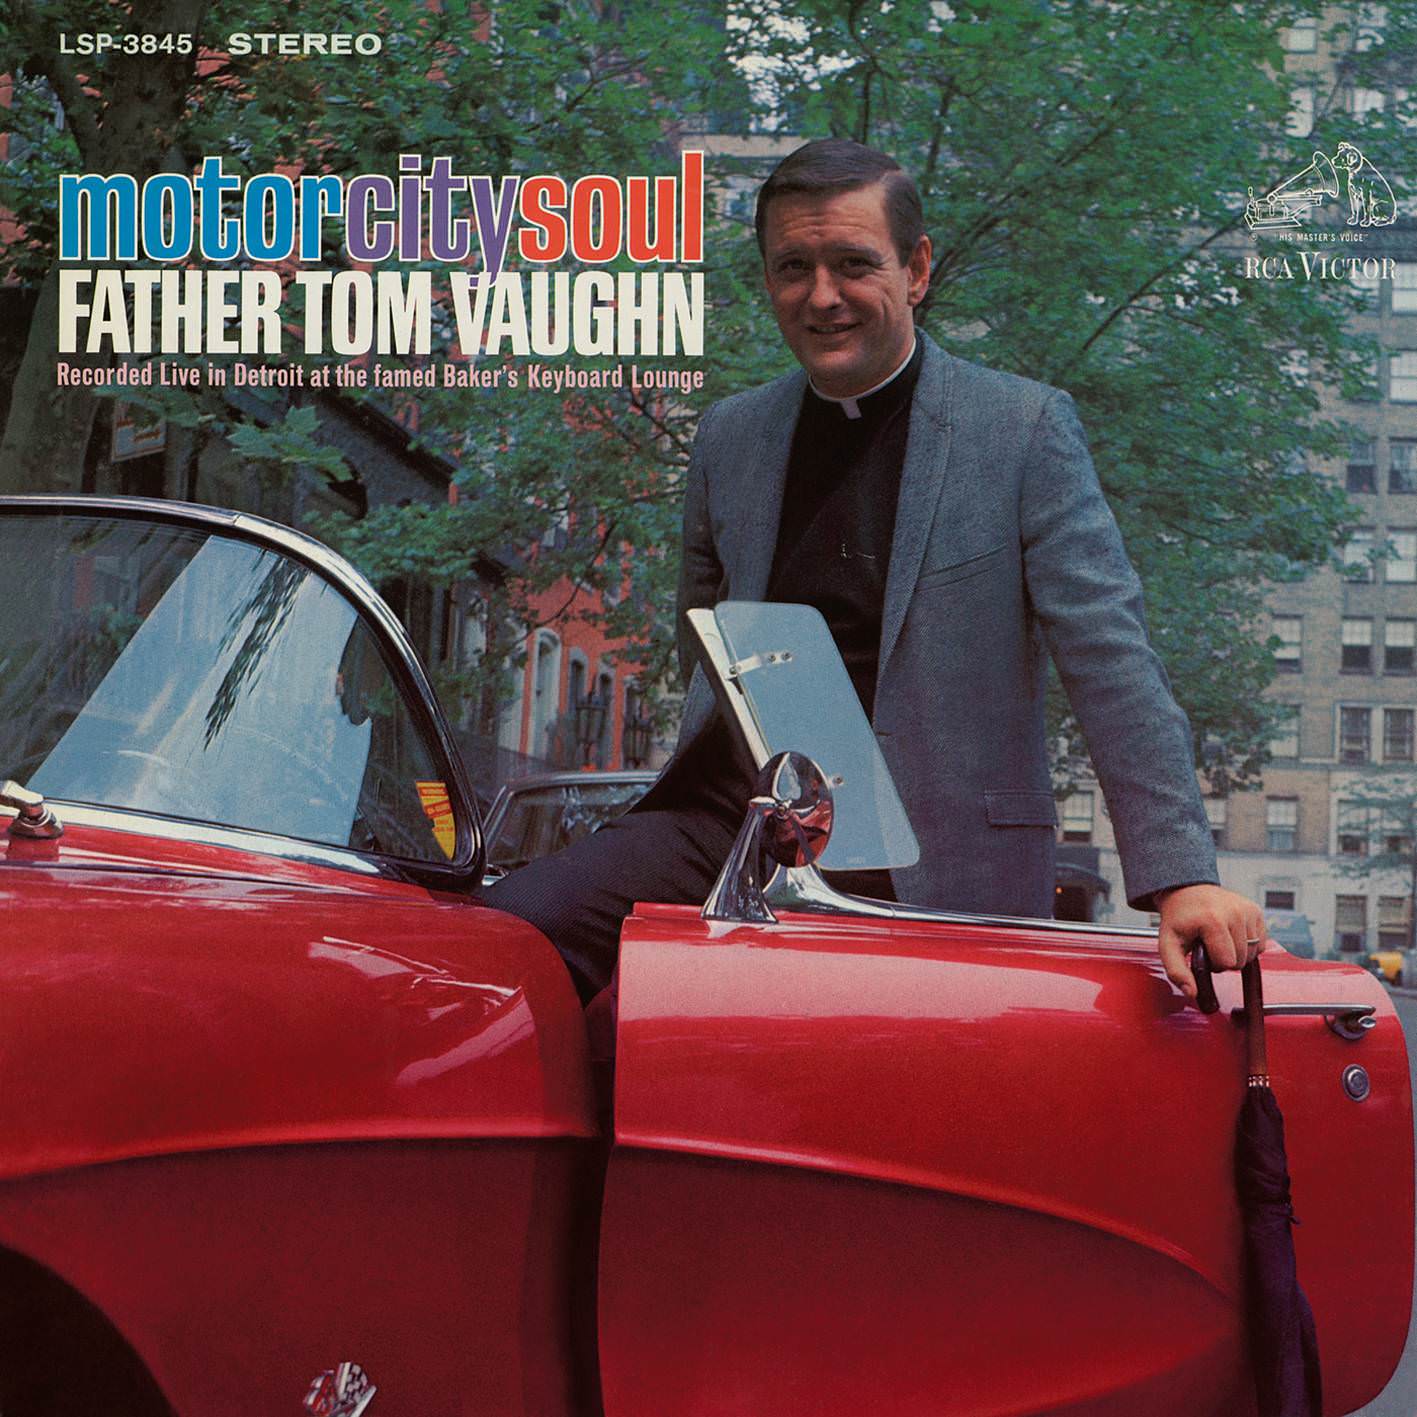 Father Tom Vaughn - Motor City Soul (1967/2017) [AcousticSounds FLAC 24bit/192kHz]